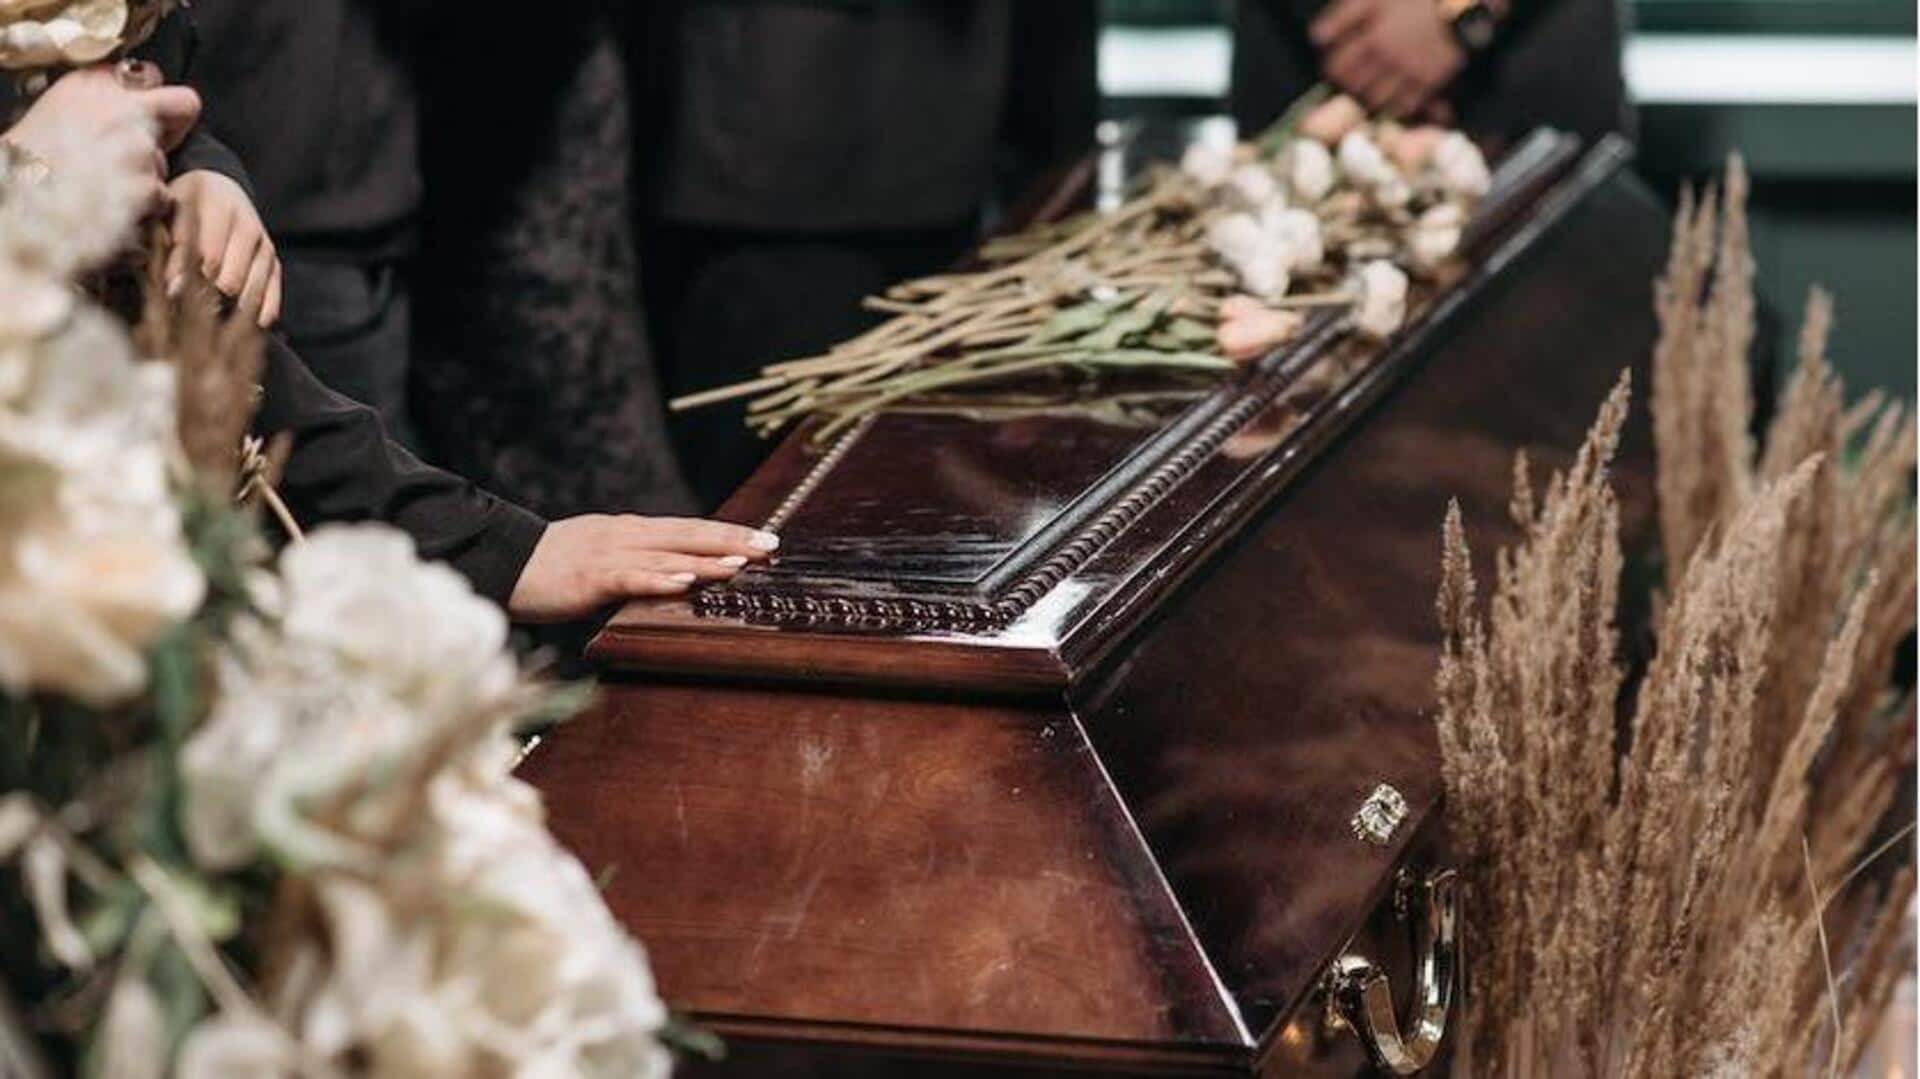 ब्रिटेन: अस्पताल की गलती से बदल गया शव, परिवार ने किया गलत व्यक्ति का अंतिम संस्कार